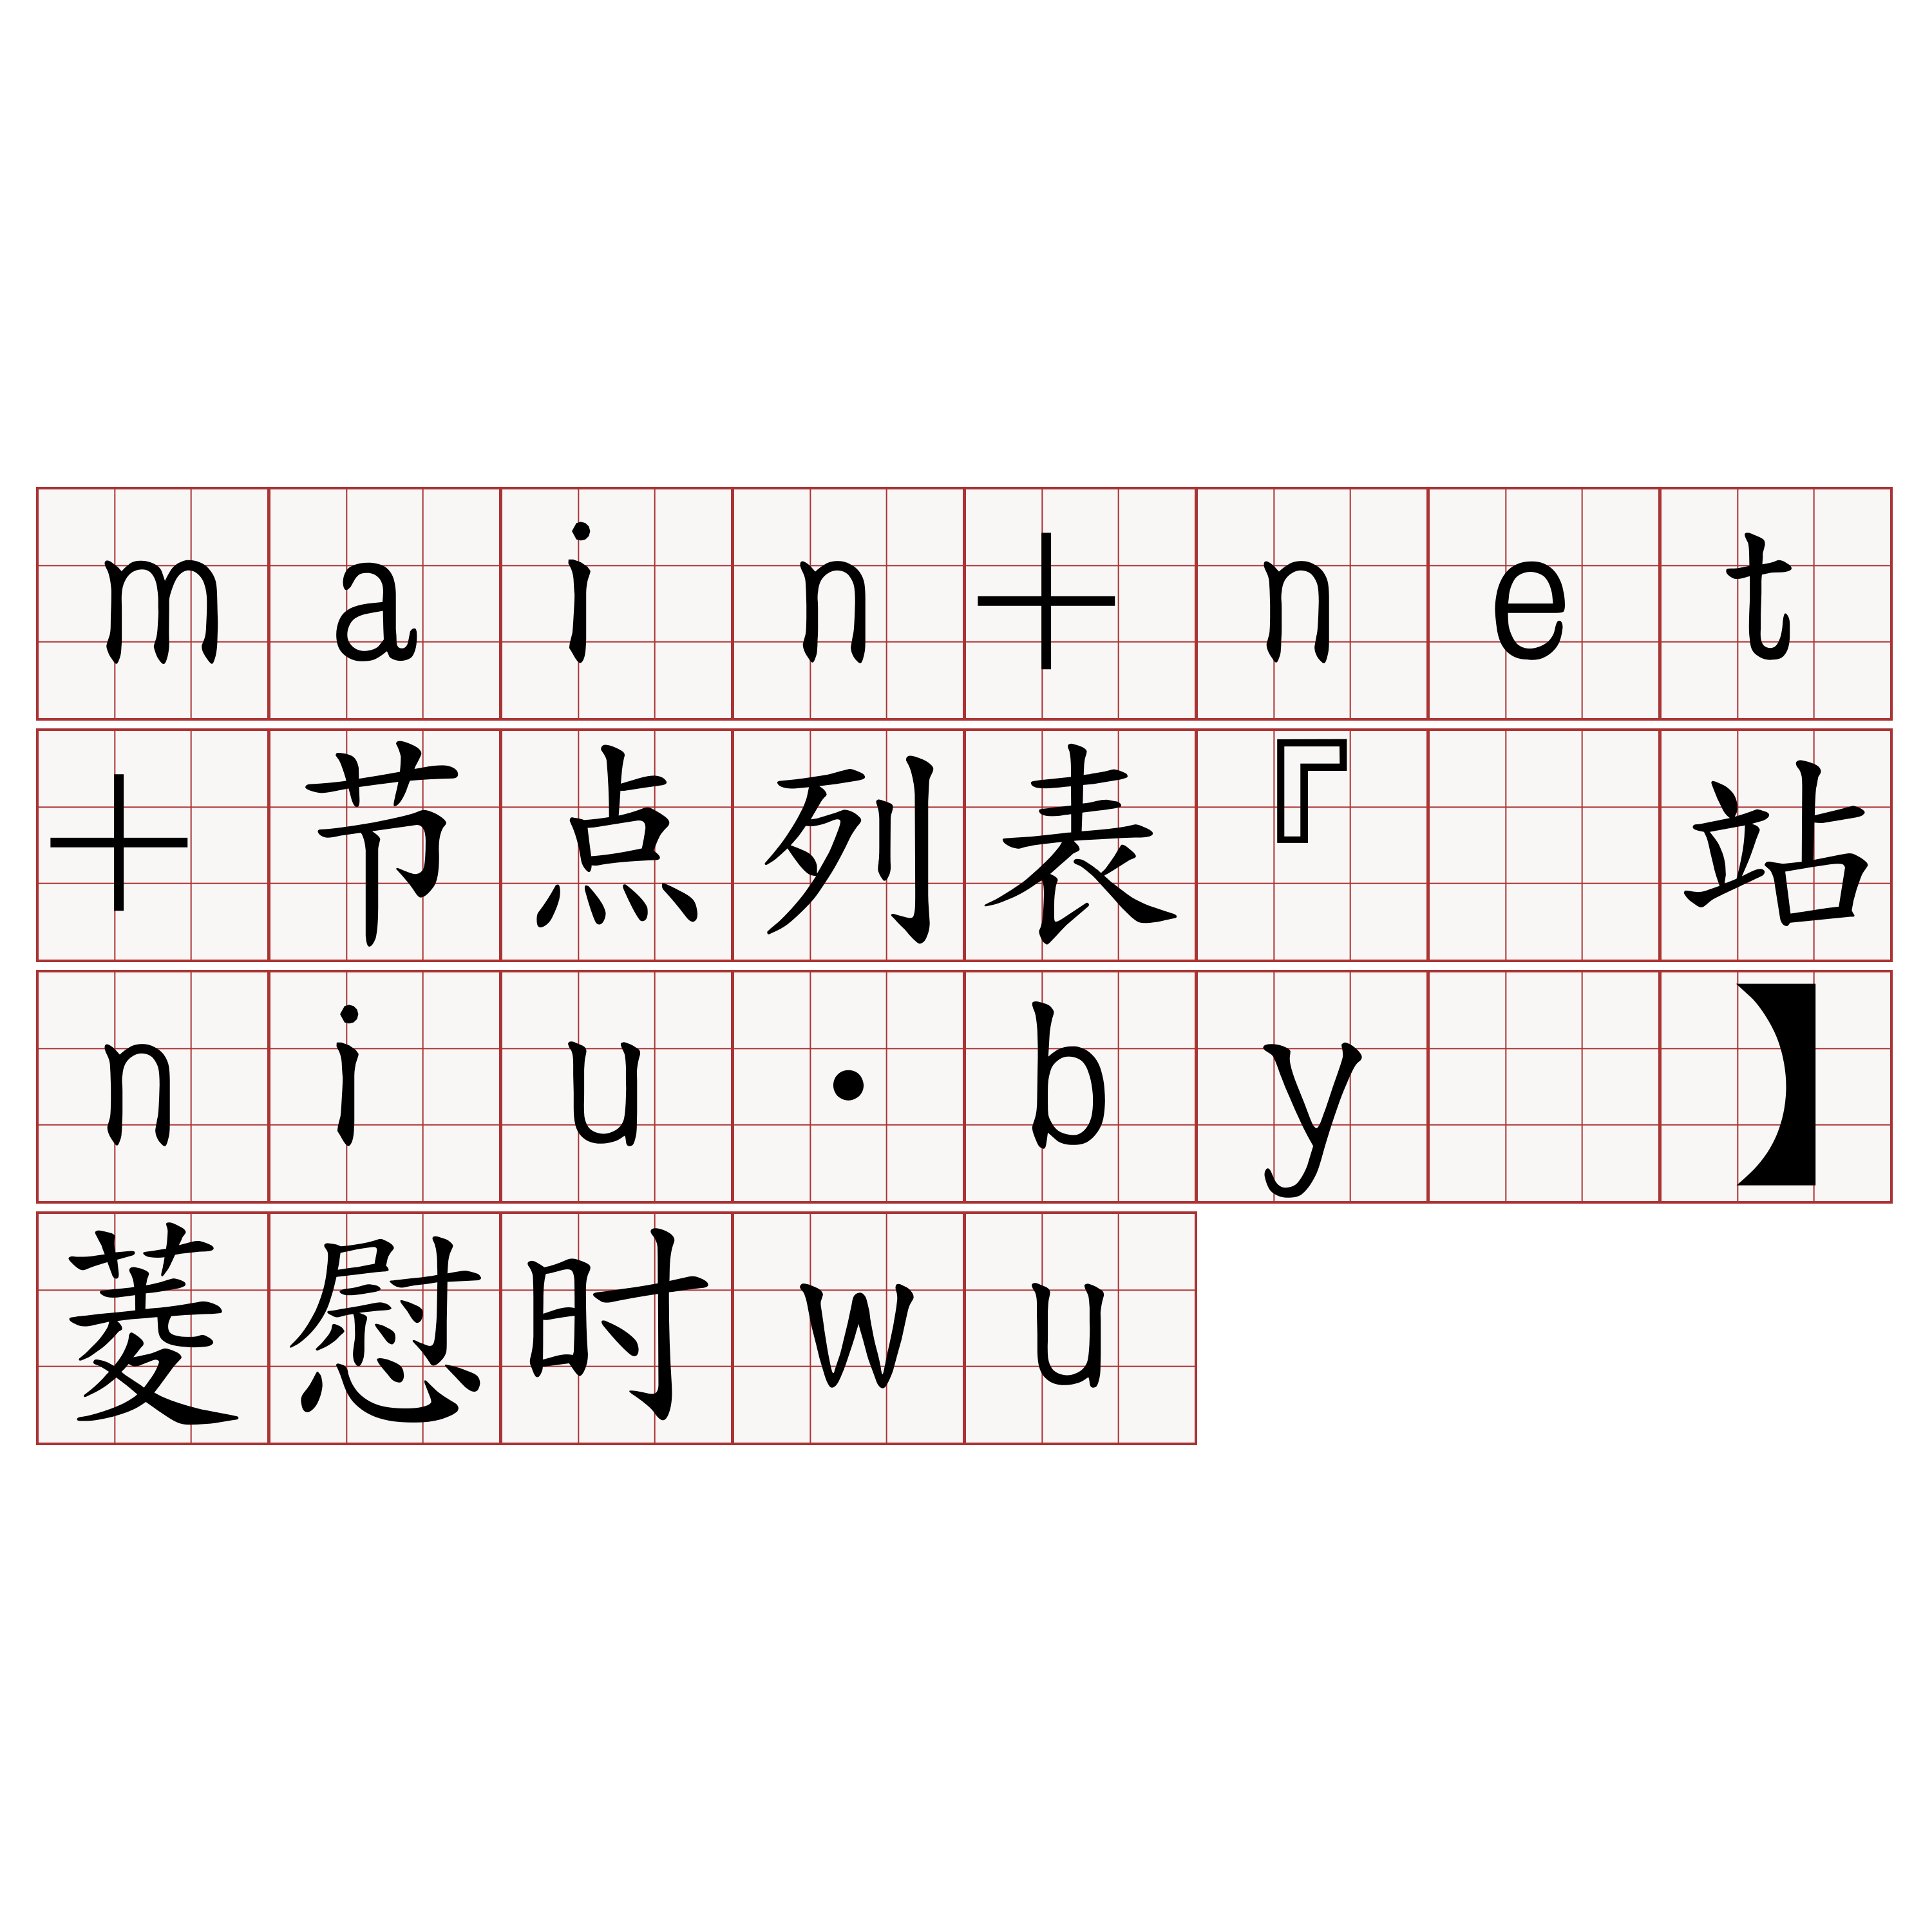 main+net+节点列表『🍀网站niu·by🍀』】菱慰时wu